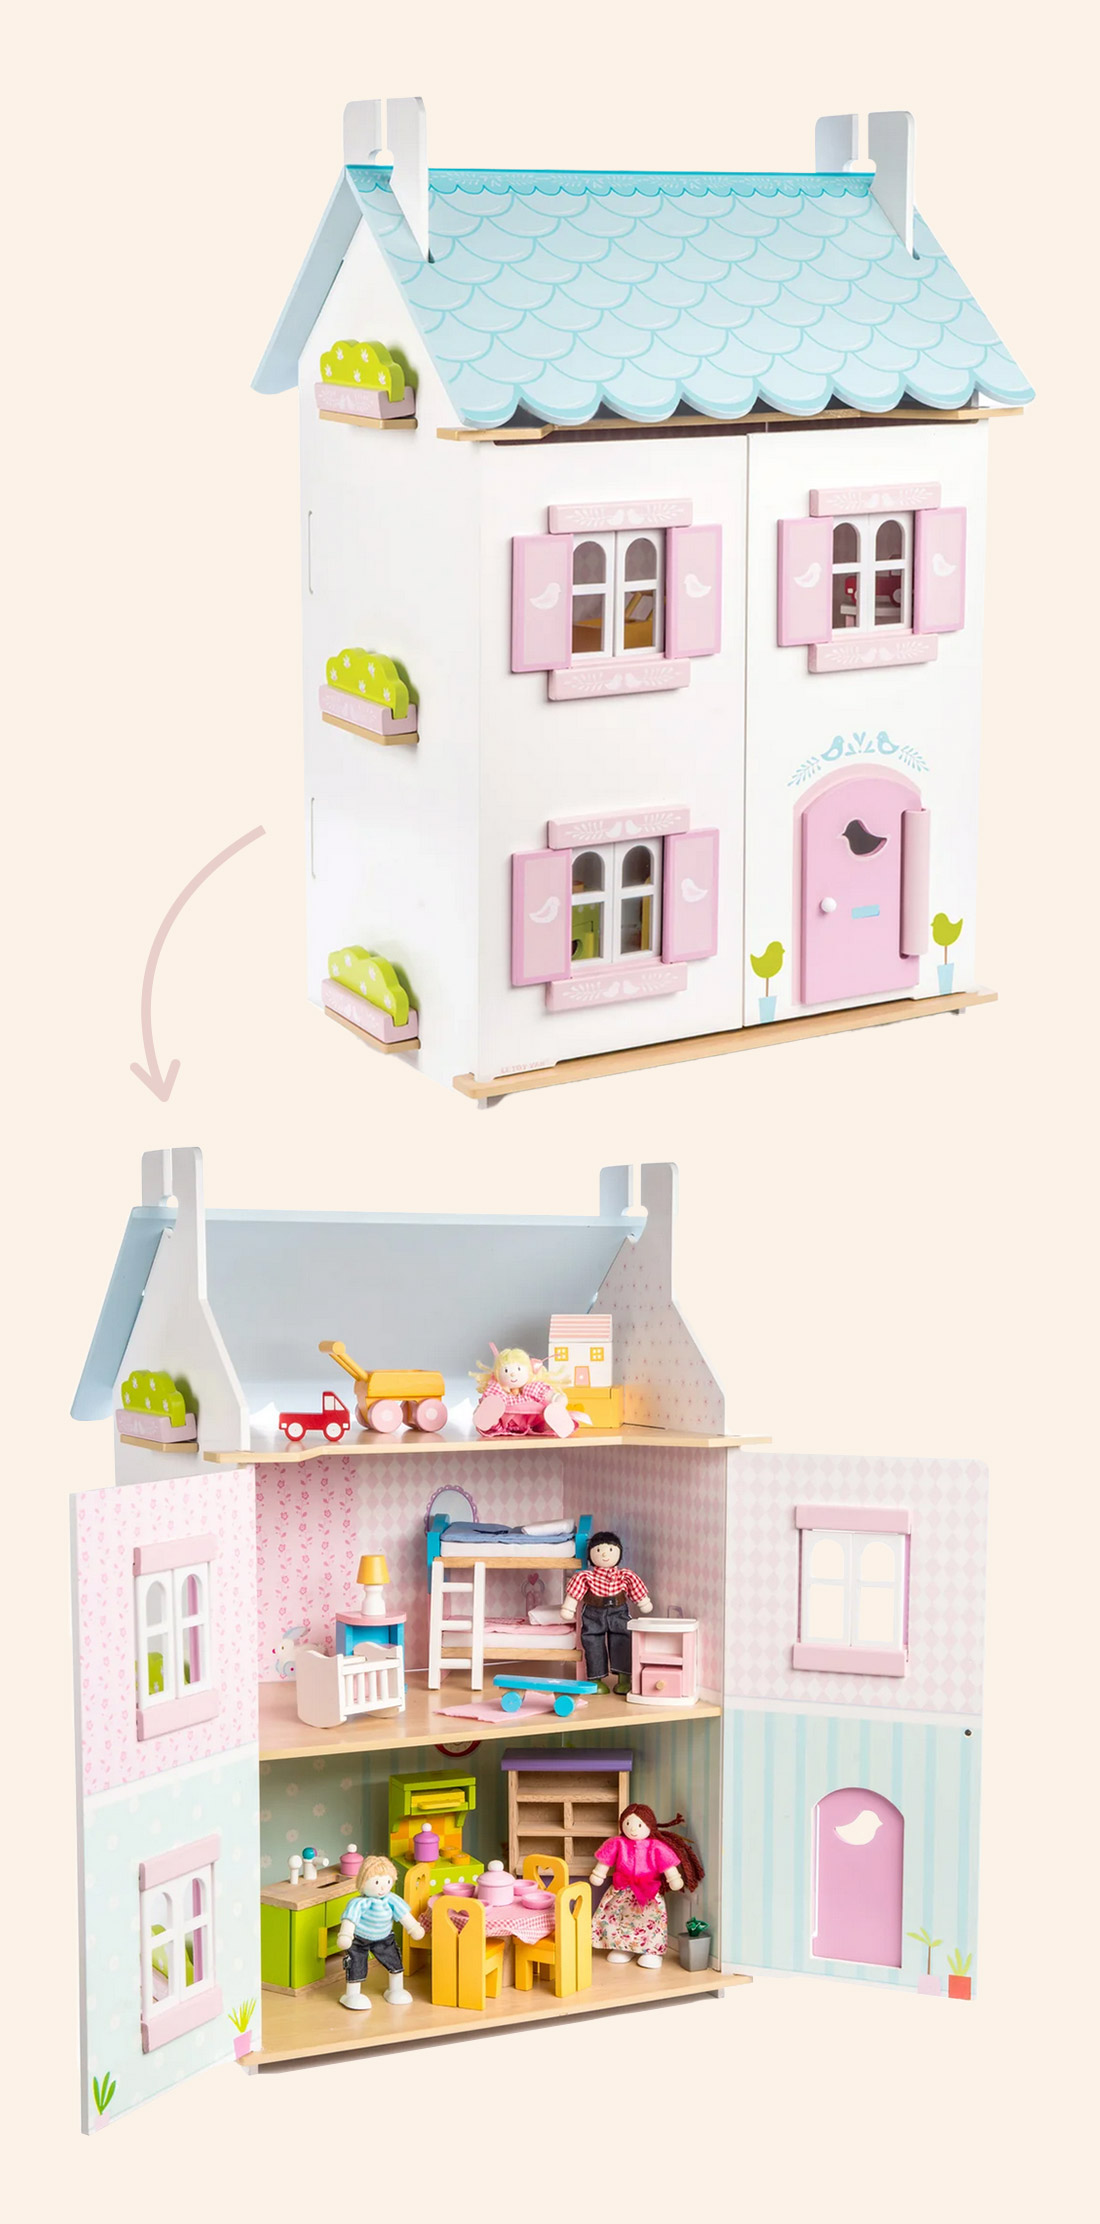 בית בובות מעץ לילדים וילדות מתנת יום הולדת מושלמת לגיל שנתיים שלוש ארבע